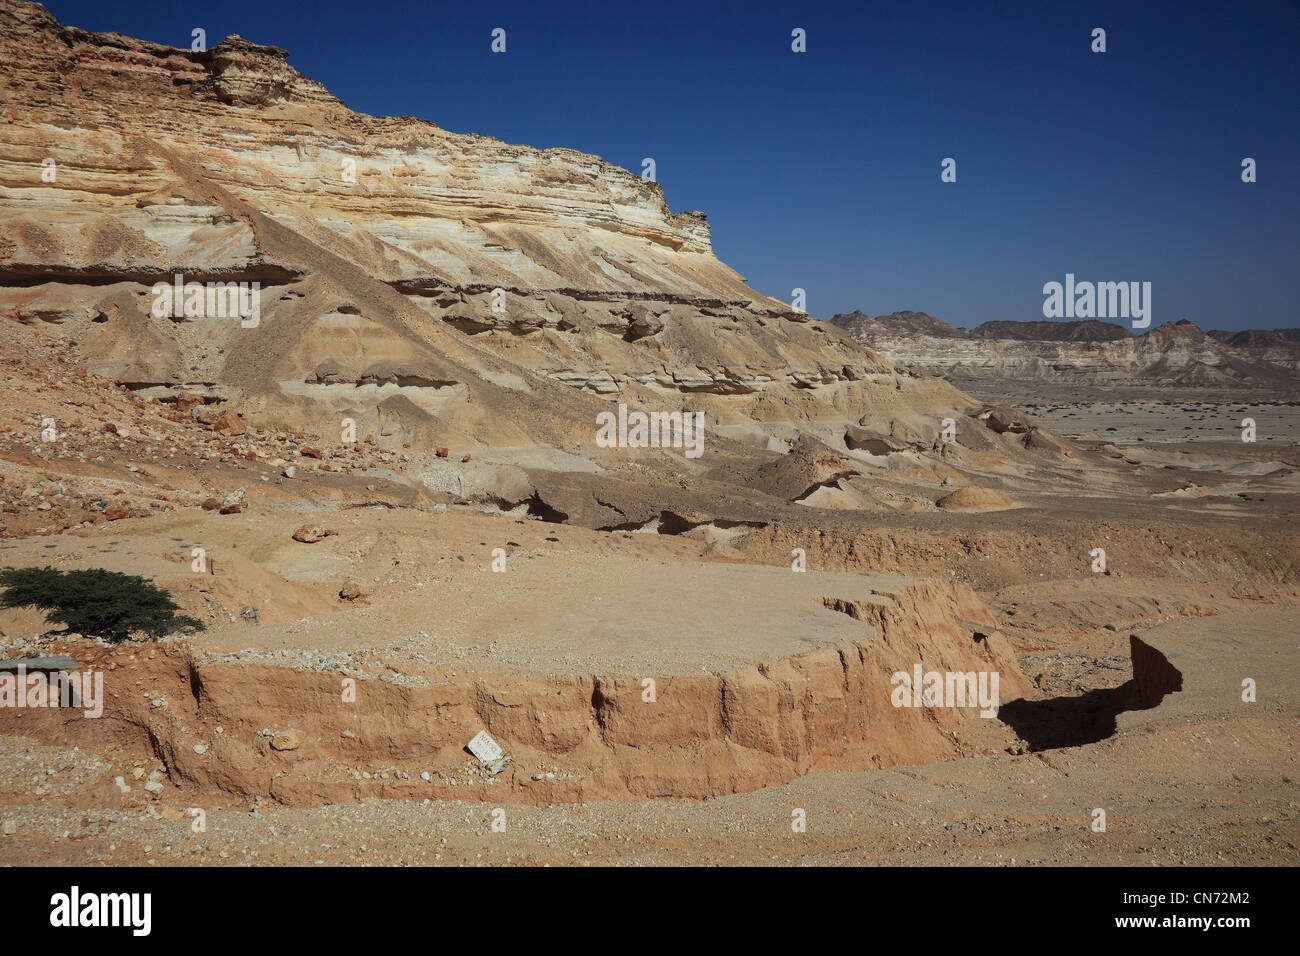 Landschaft des nördlichen Dhofar, Oman Stock Photo